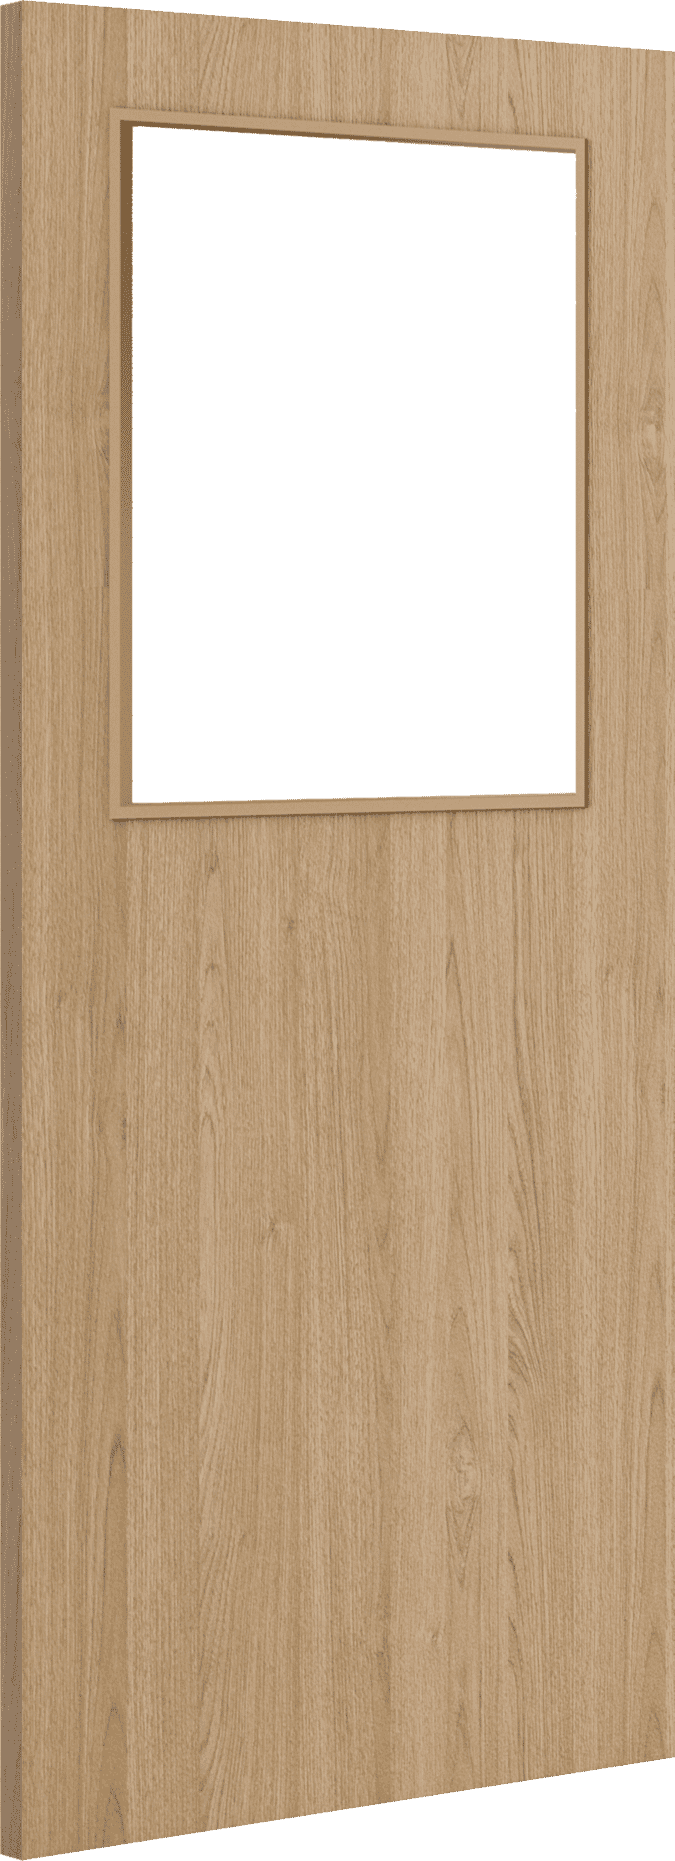 1981mm x 762mm x 54mm (30") Architectural Oak 01 Clear Glazed - Prefinished FD60 Fire Door Blank